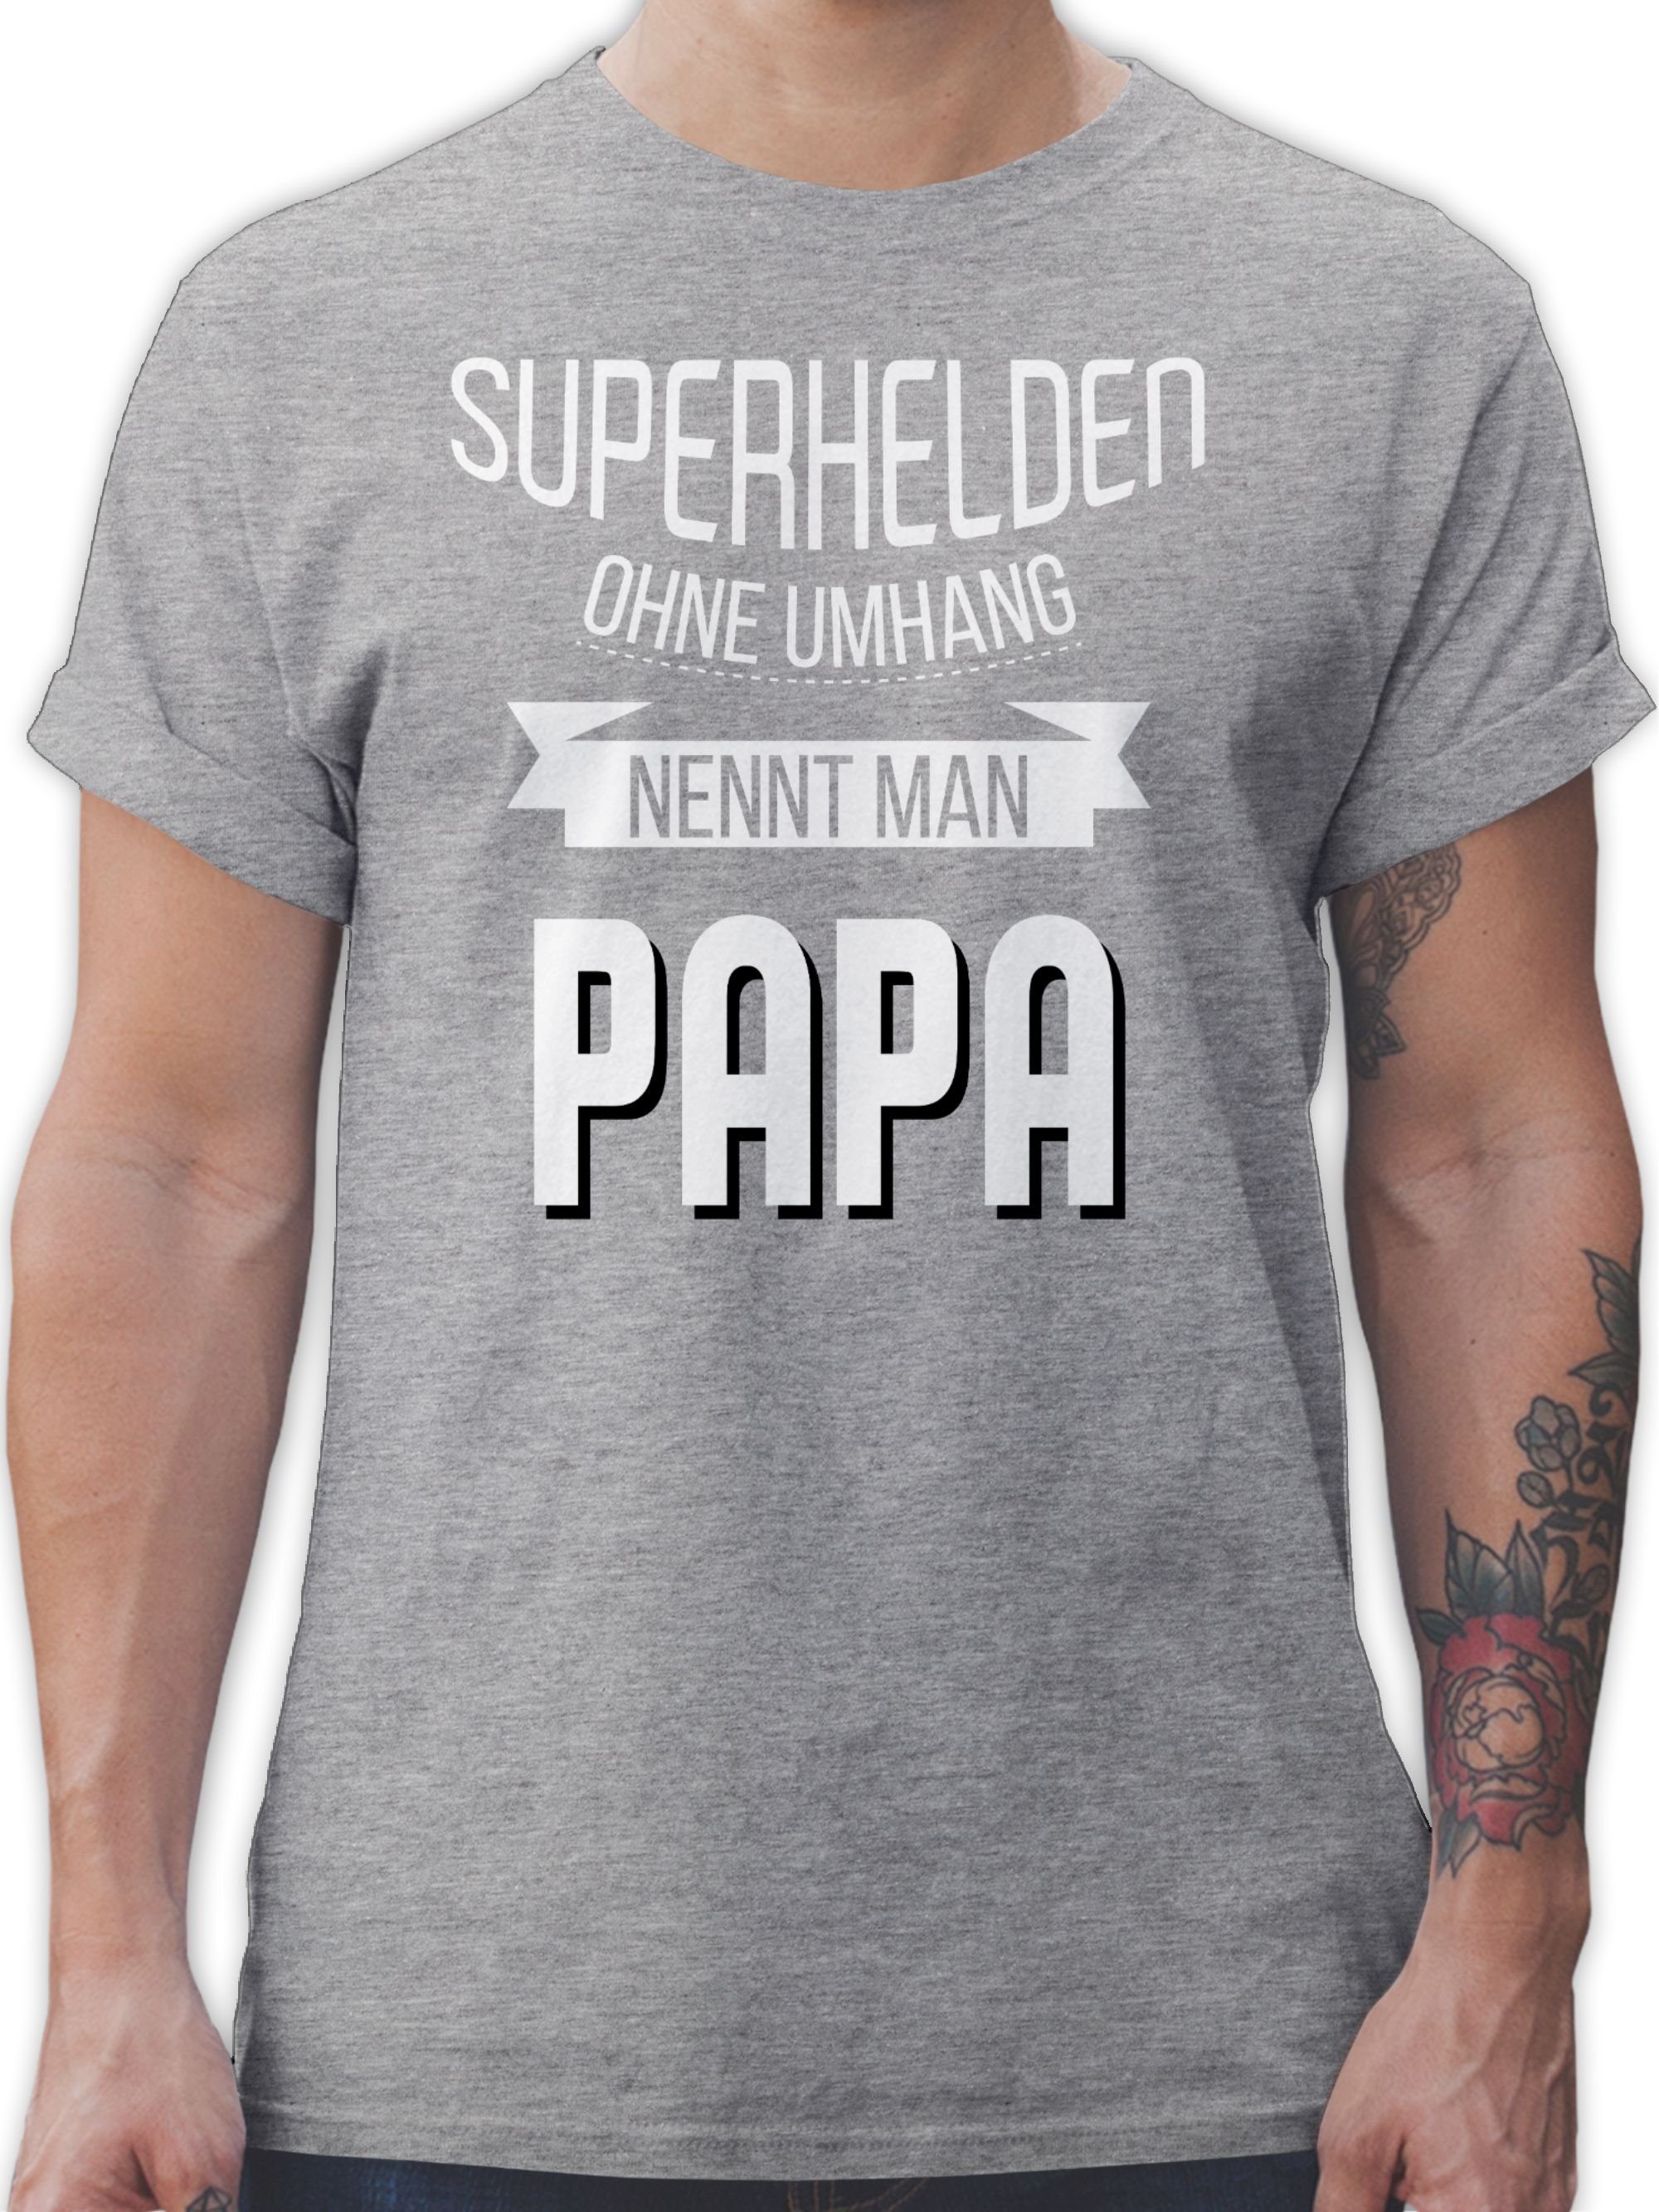 Grau ohne Vatertag 2 für Papa T-Shirt Geschenk Umhang nennt meliert Papa Shirtracer Superhelden man